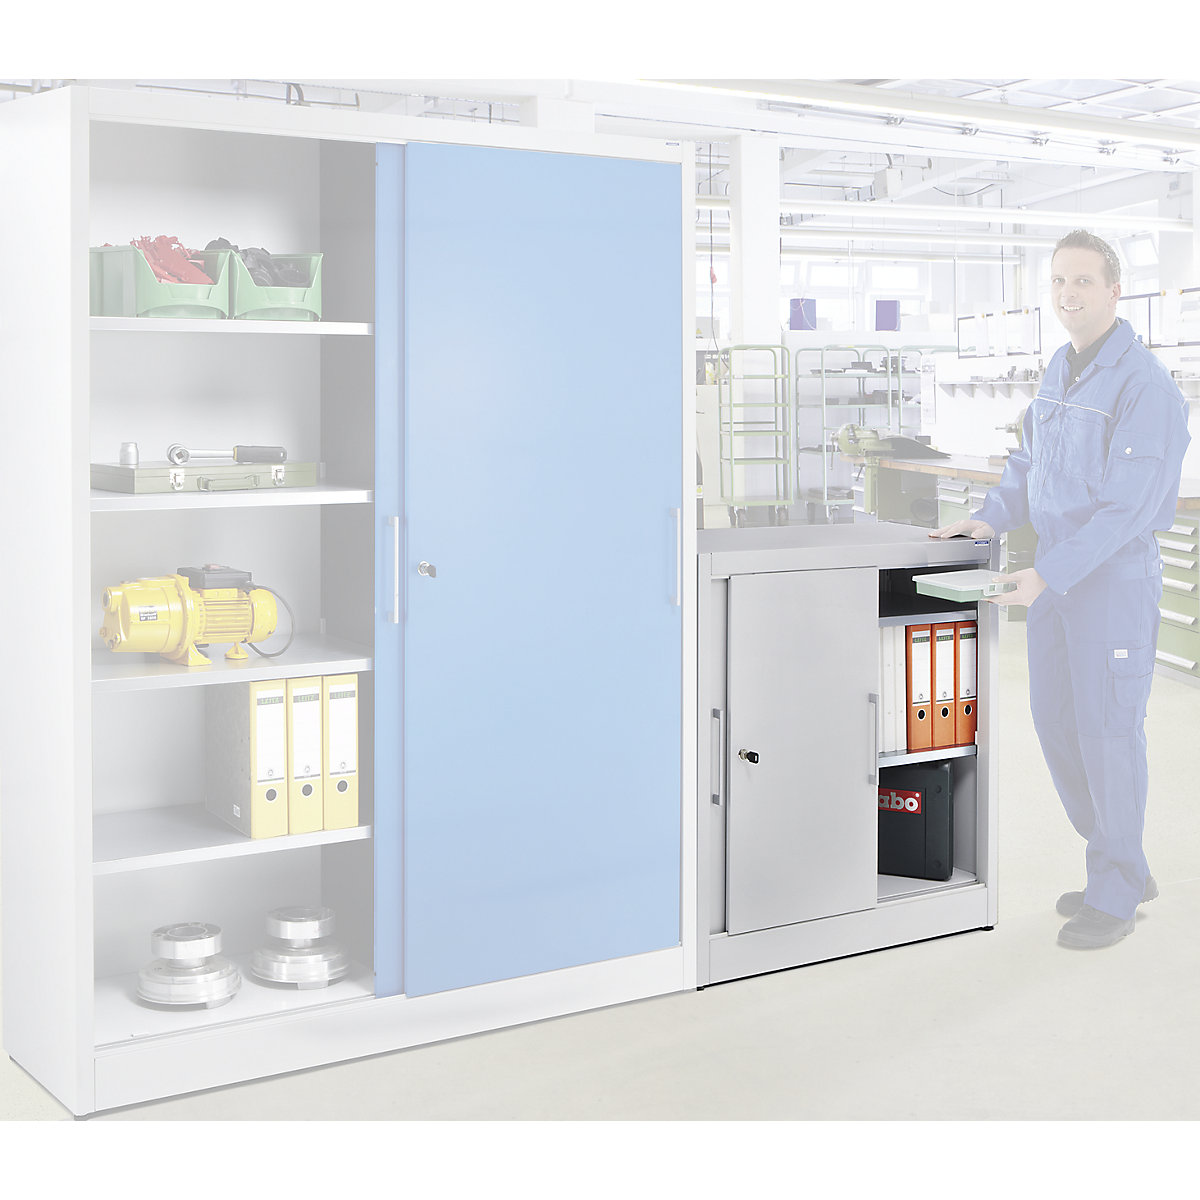 Sliding door cupboard, height 1000 mm – eurokraft pro, with 2 shelves, depth 420 mm, doors in reseda green RAL 6011-1